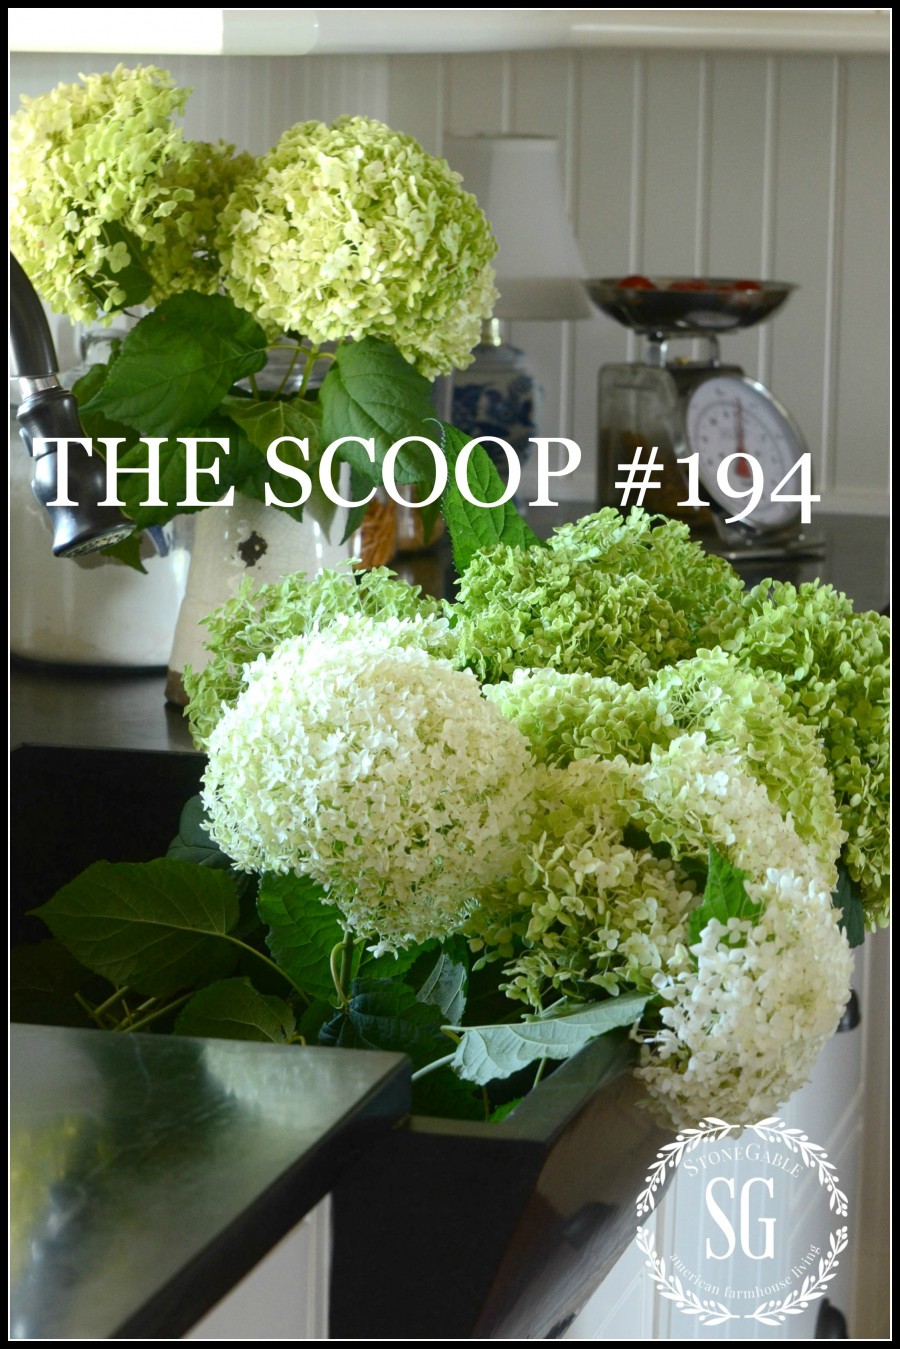 THE SCOOP #194